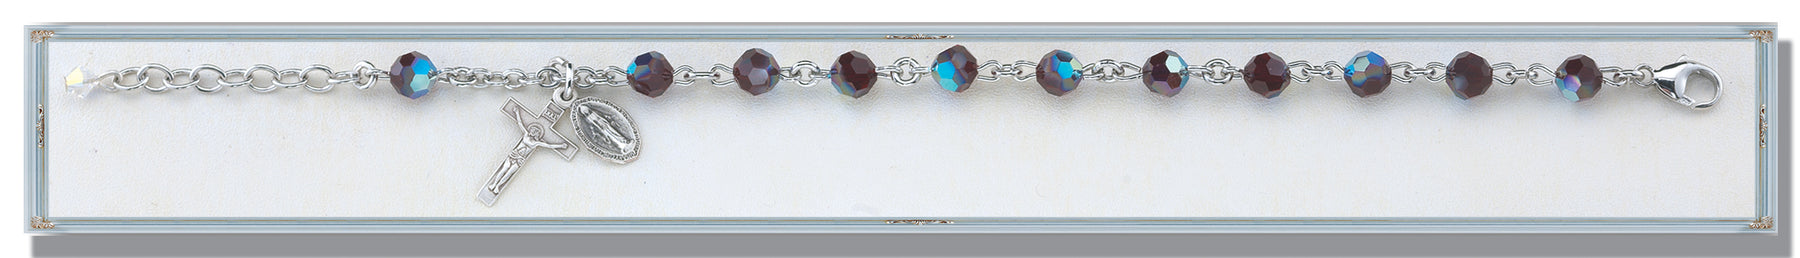 Garnet Round Faceted Swarovski Crystal Bracelet